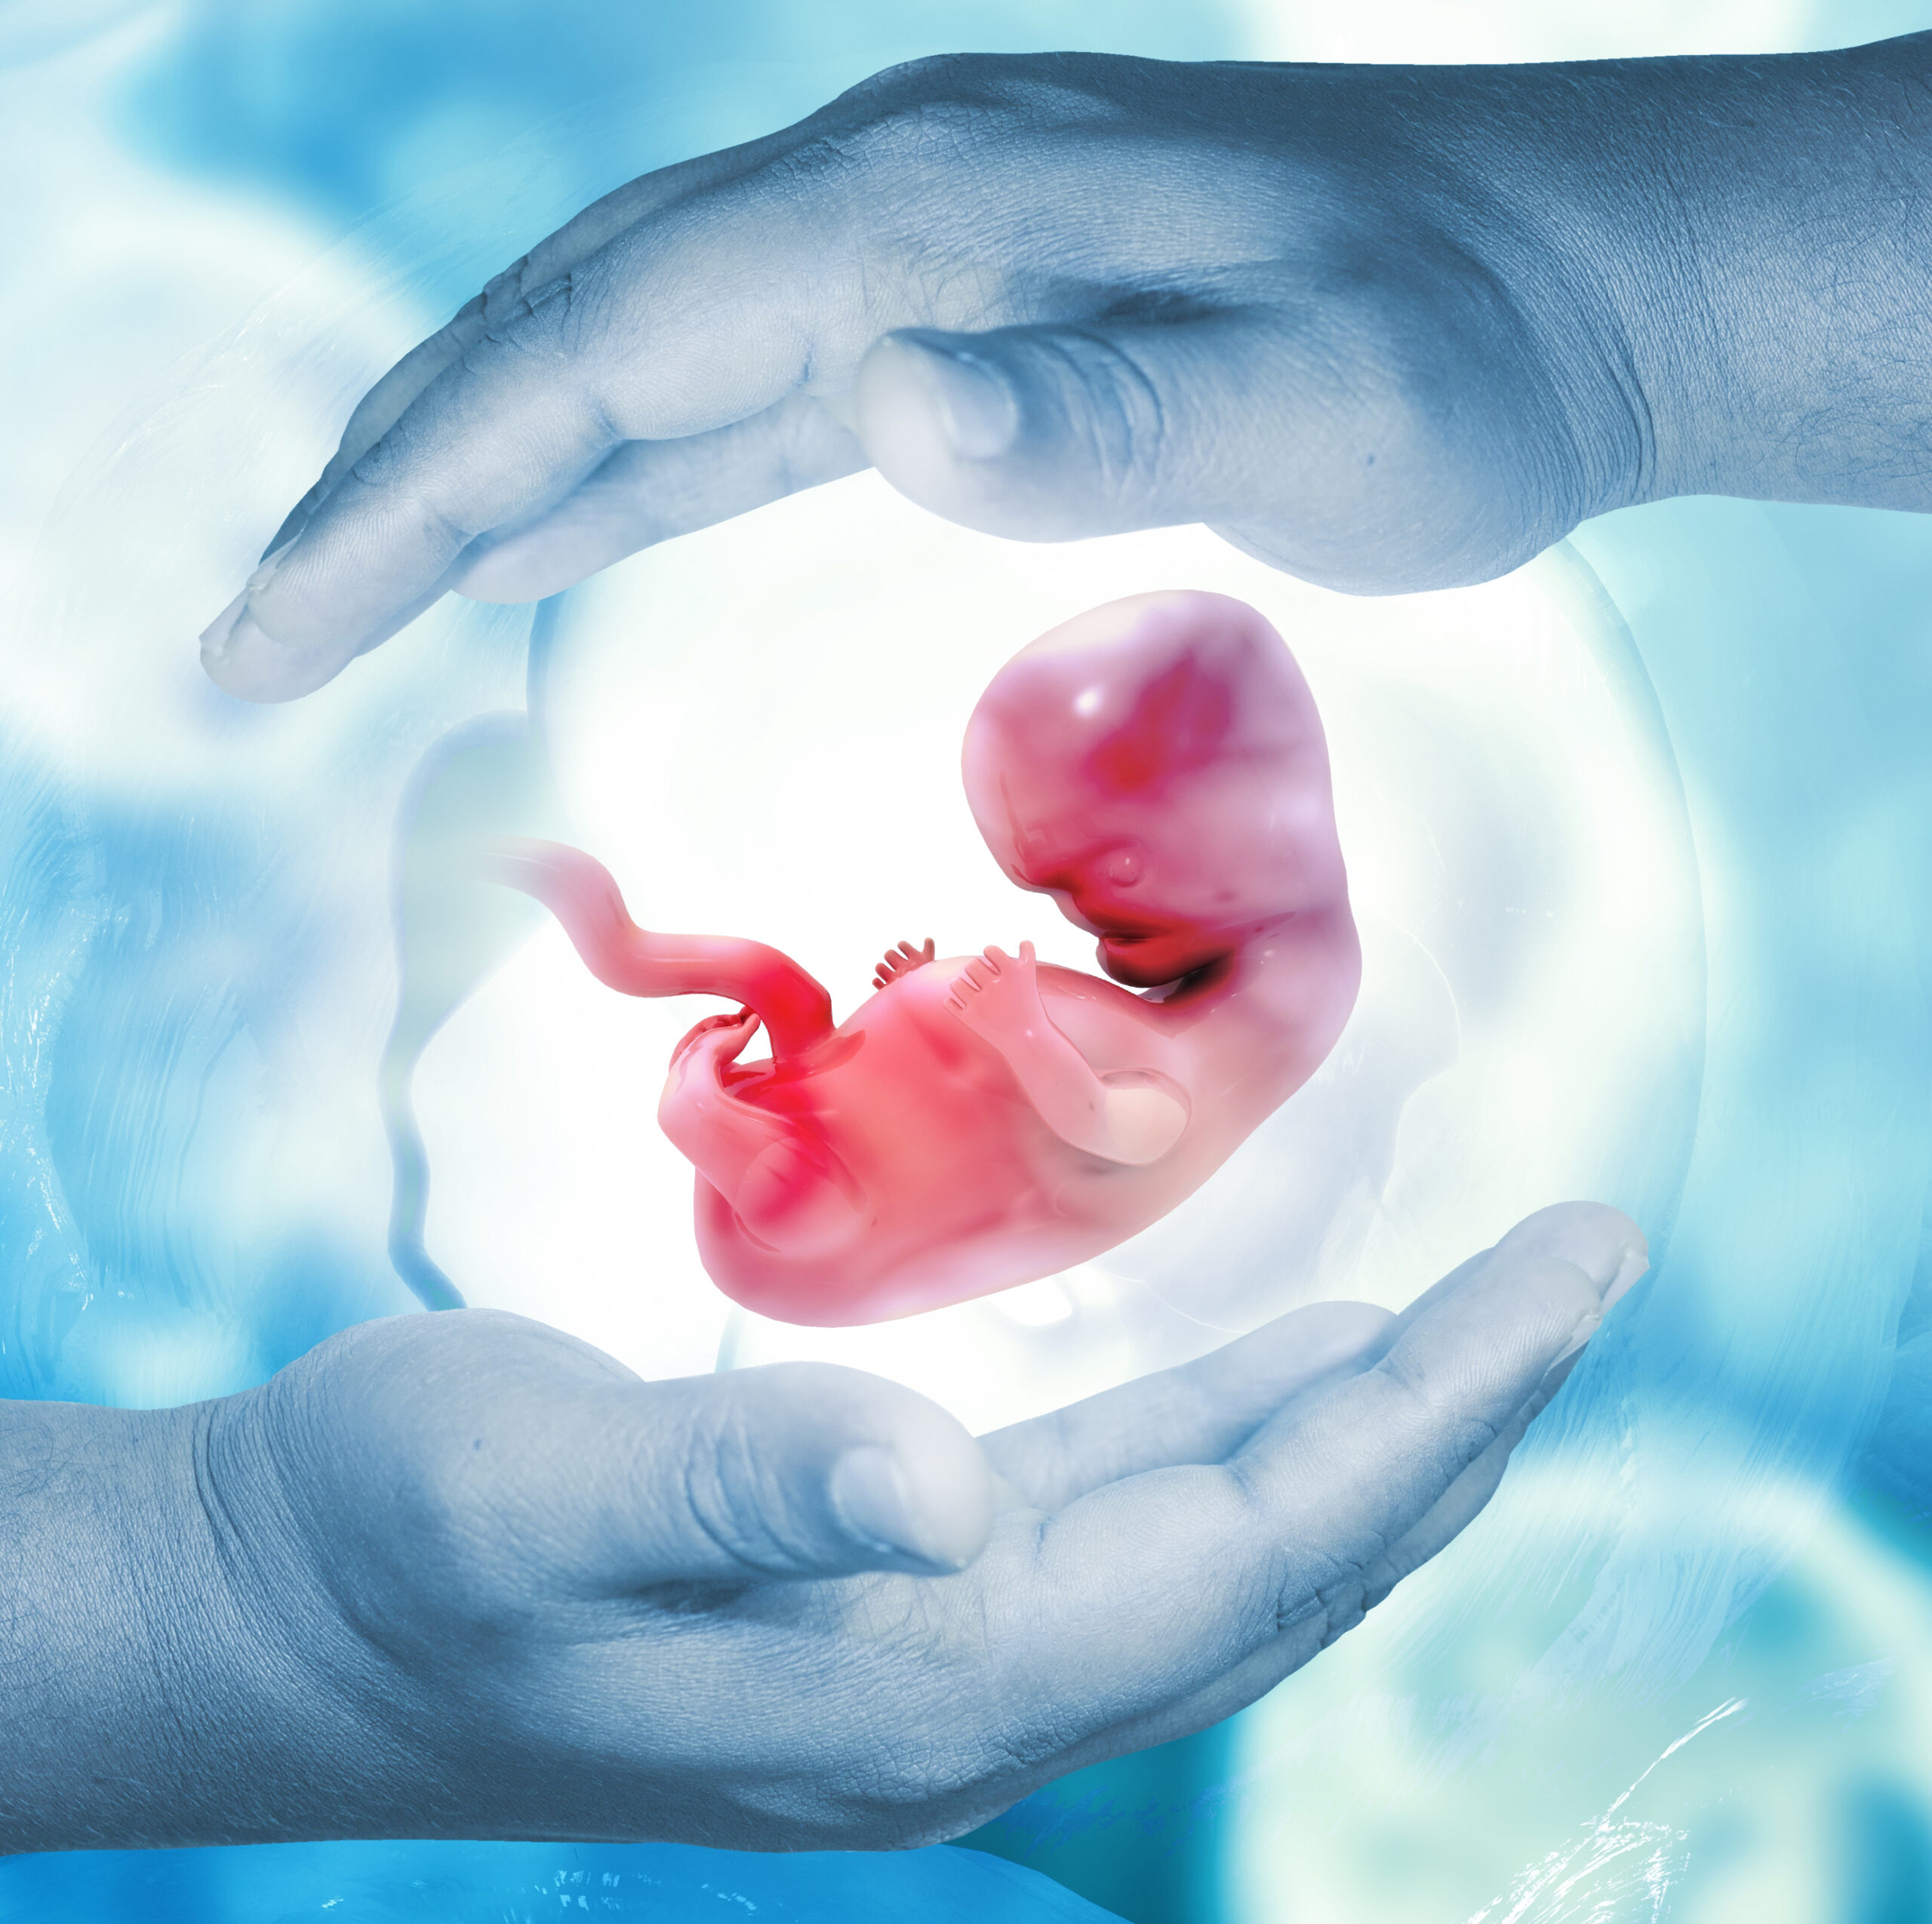 Illustration eines Embryo in der Fruchtblase, gehalten von zwei Händen.